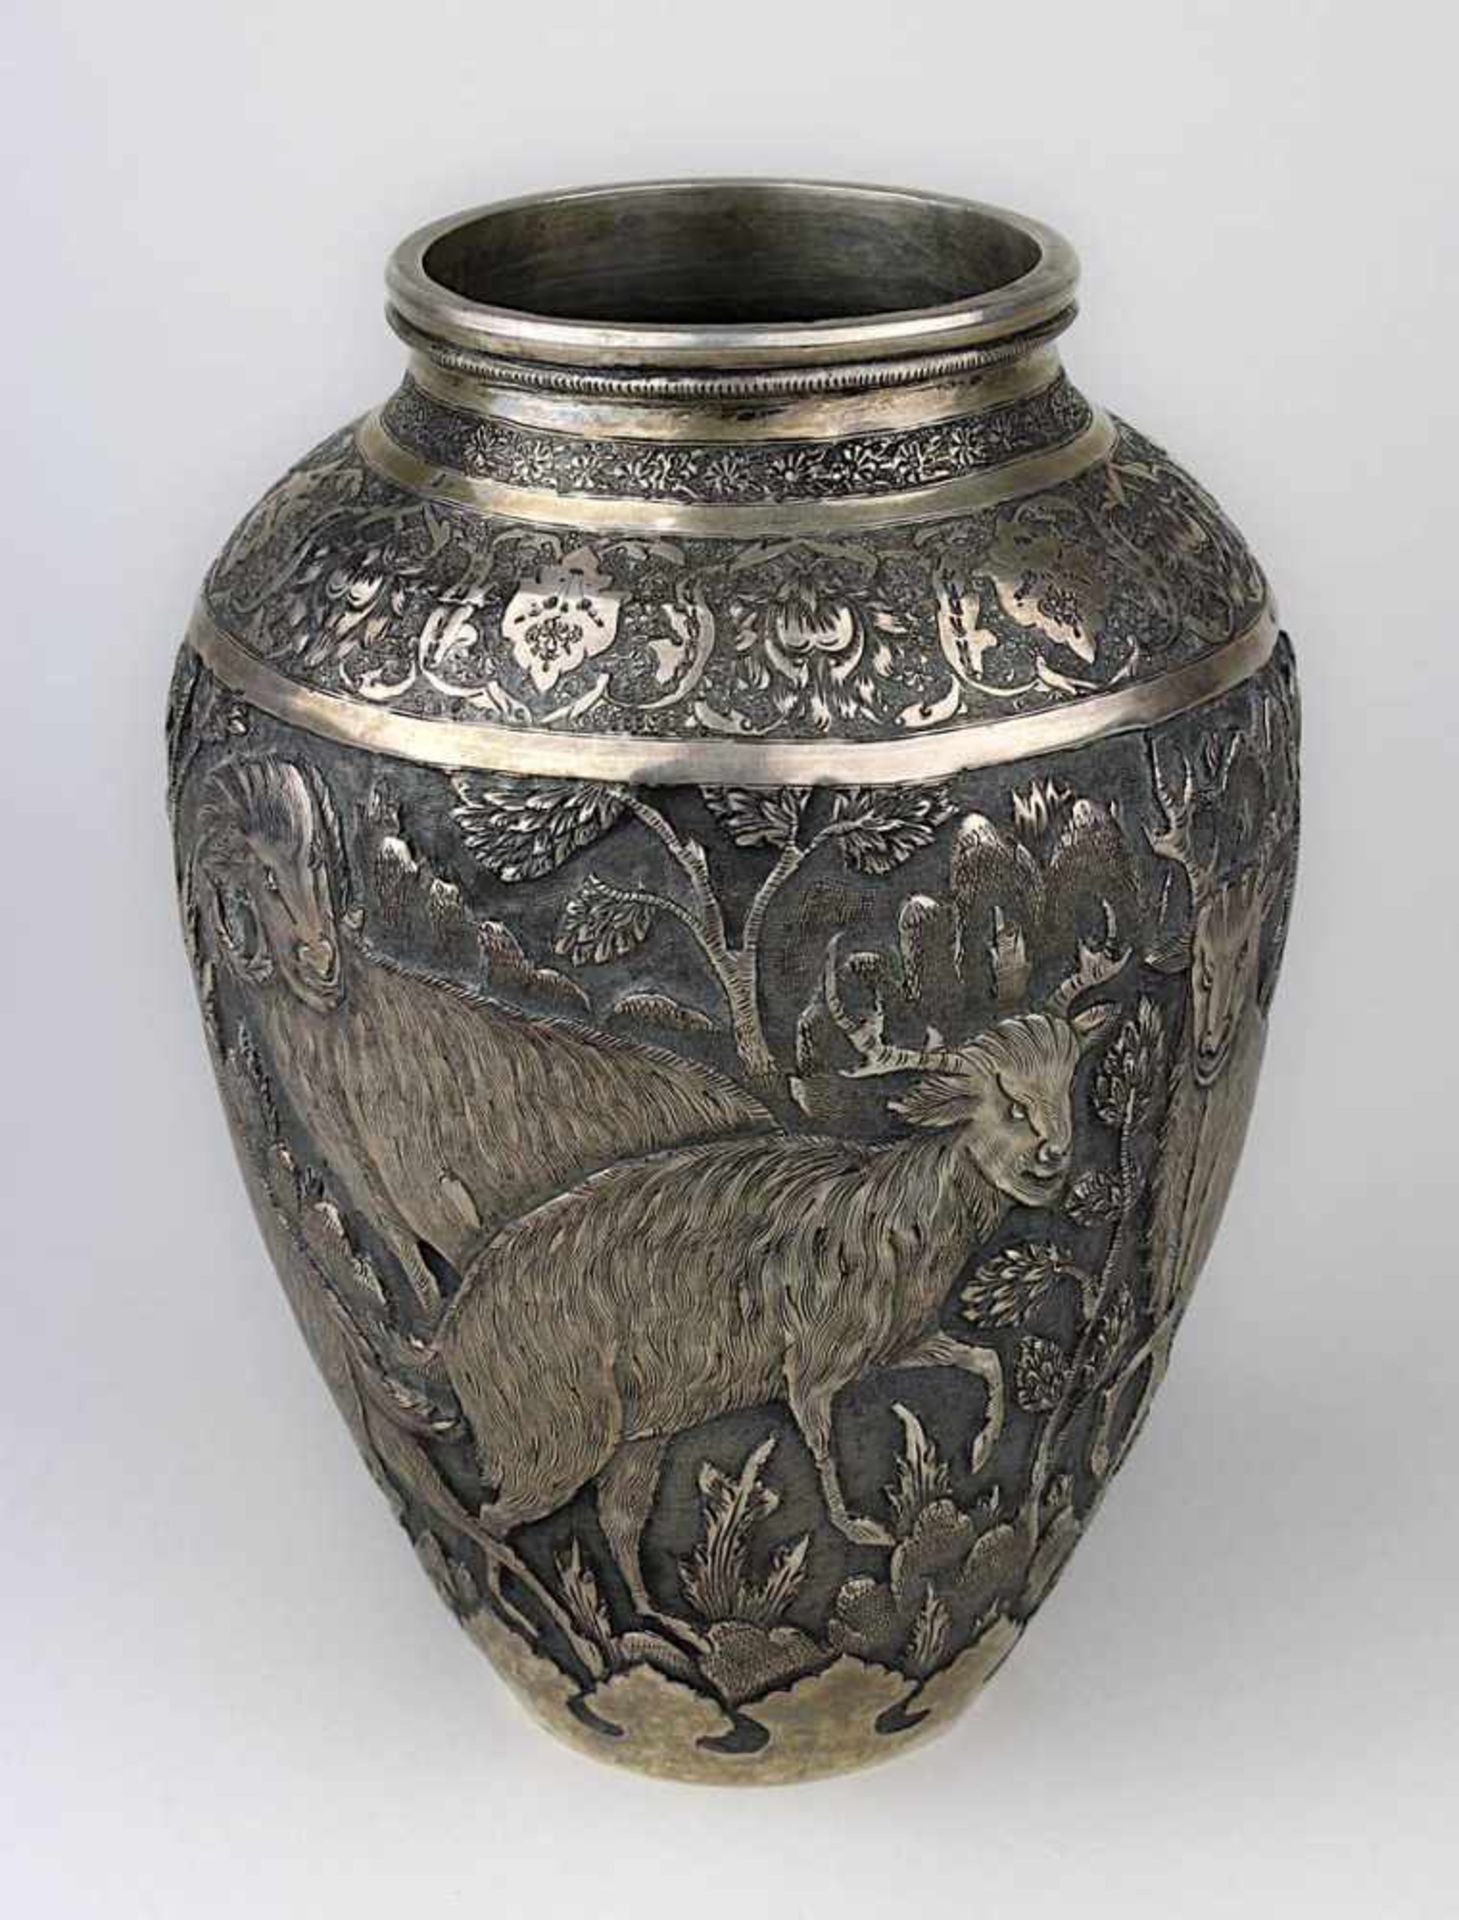 Silbervase mit Paarhufer-Dekor, Persien um 1900, Wandung mit reliefiertem Dekor von Hirschen, - Bild 2 aus 2